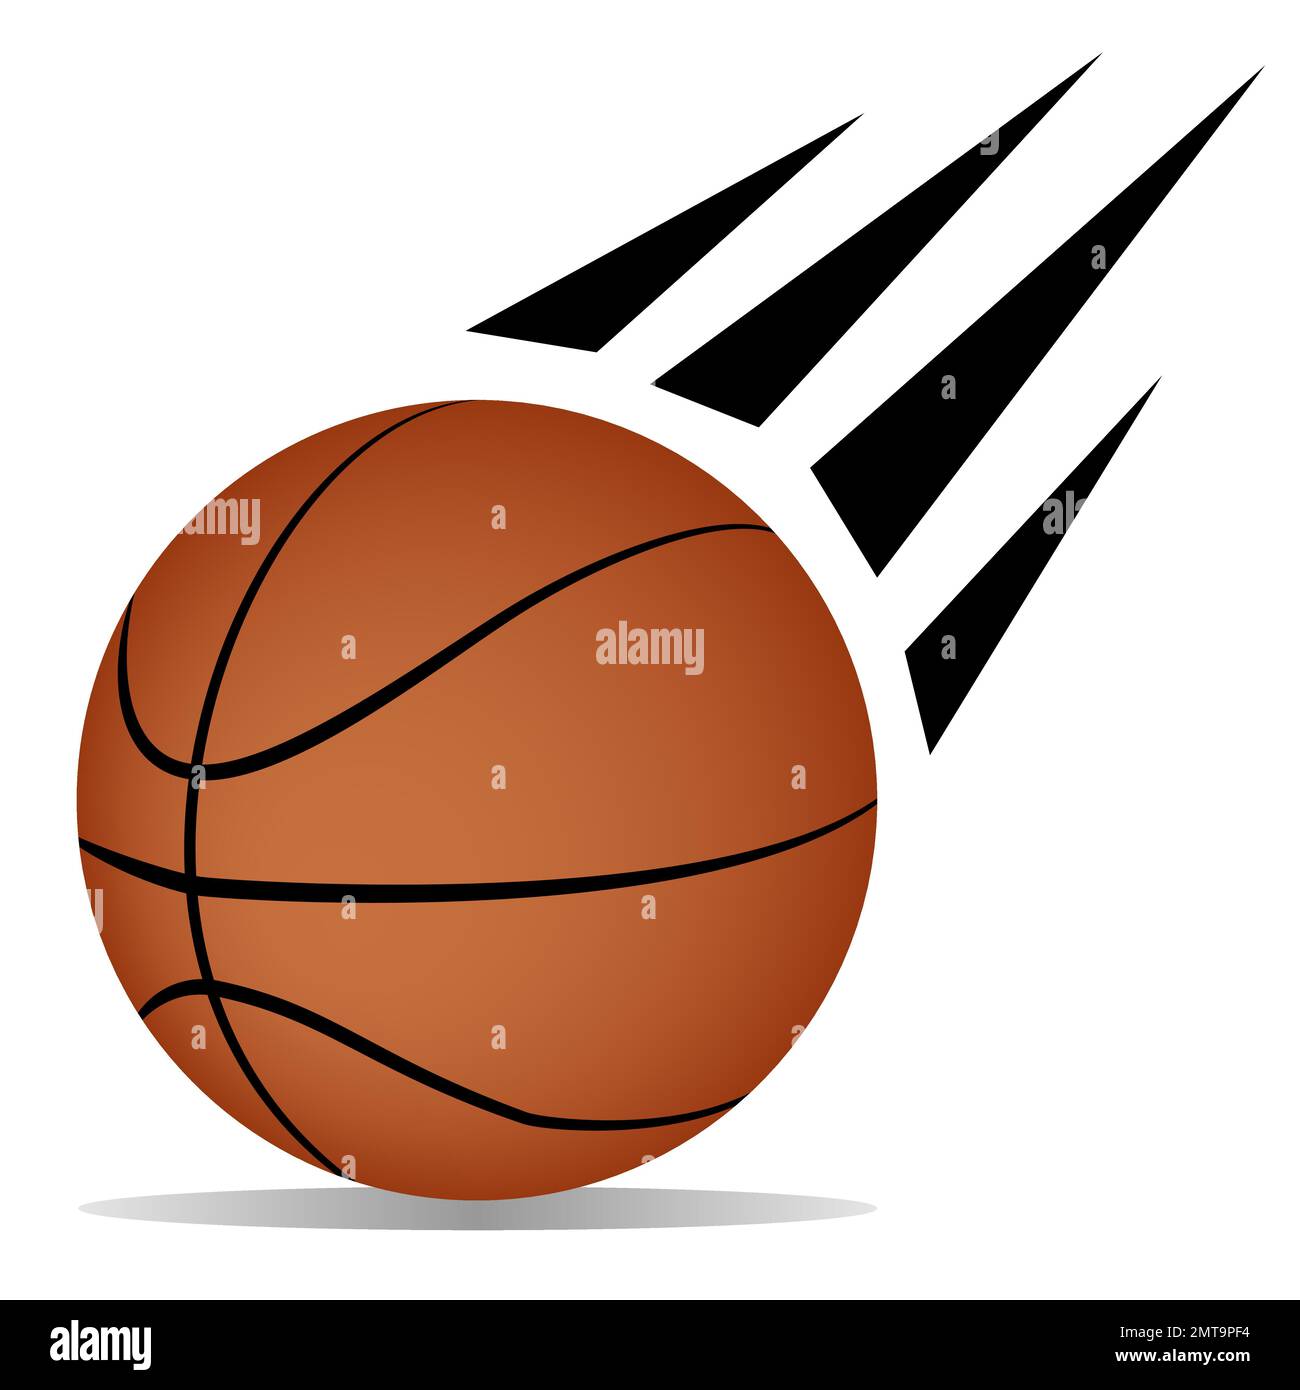 Objekt eines Basketball-Bewegungssymbols, Vektorgrafik für Designelement, Illustration eines amerikanischen Sportspiels Stock Vektor